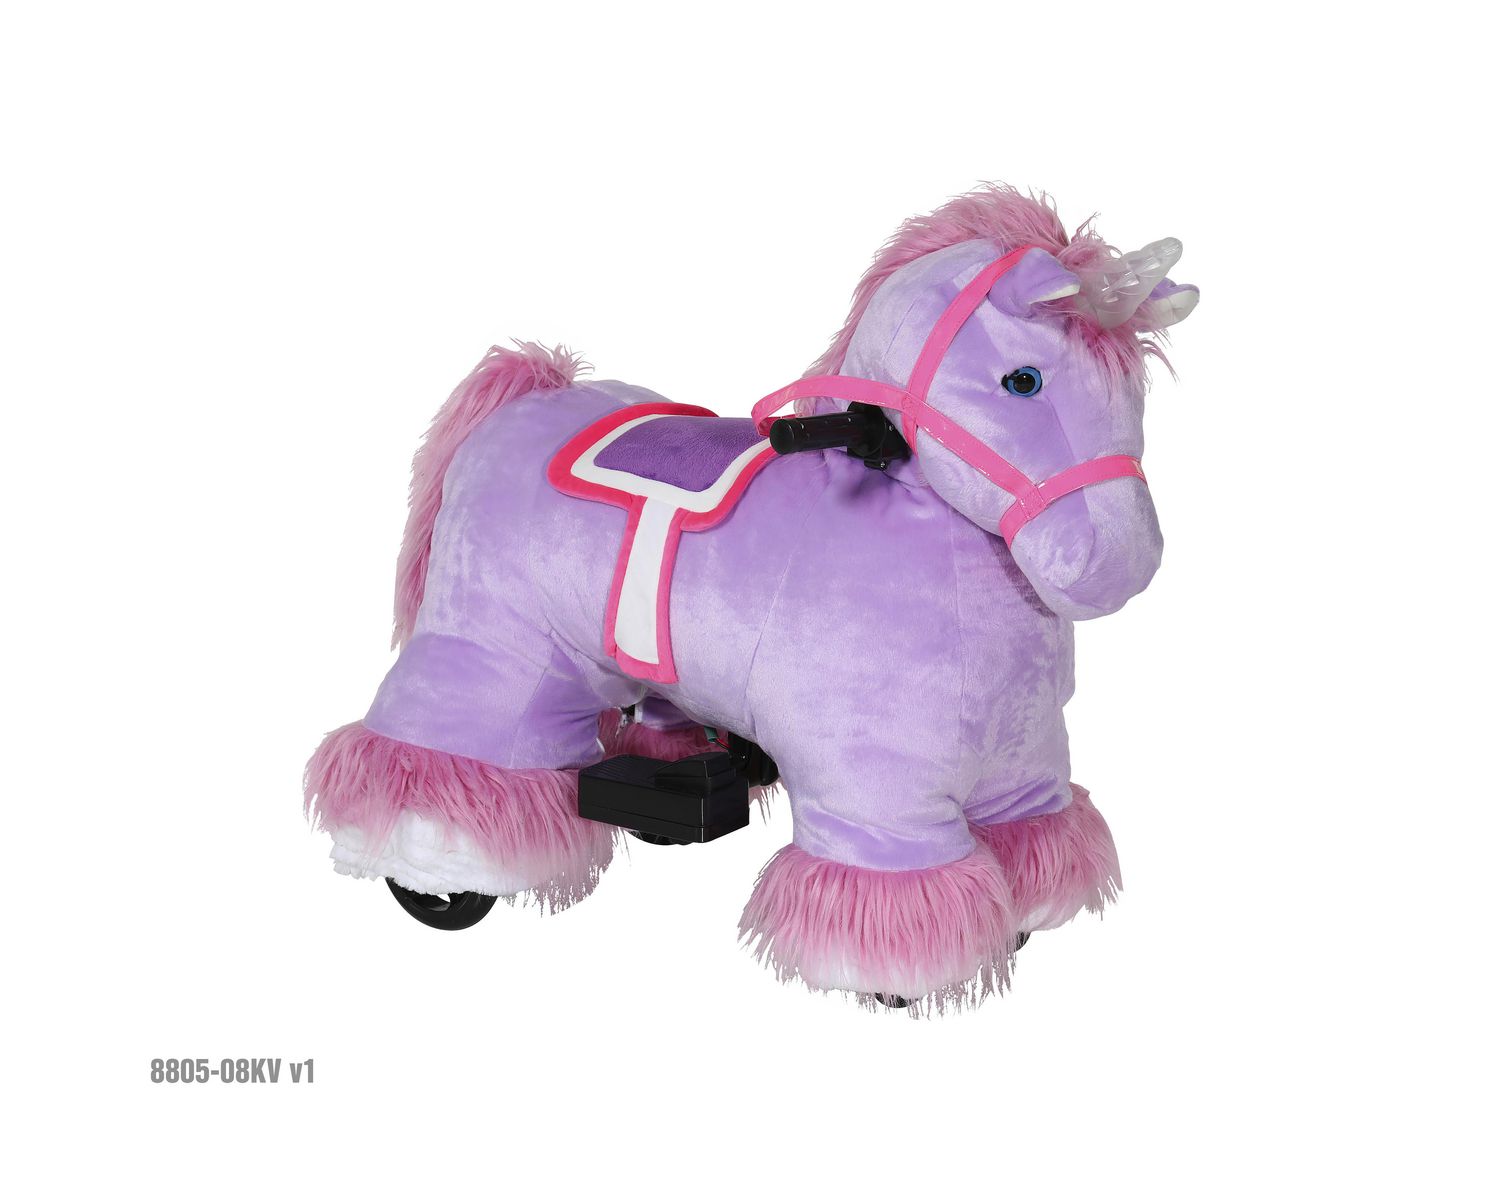 6v plush unicorn ride on